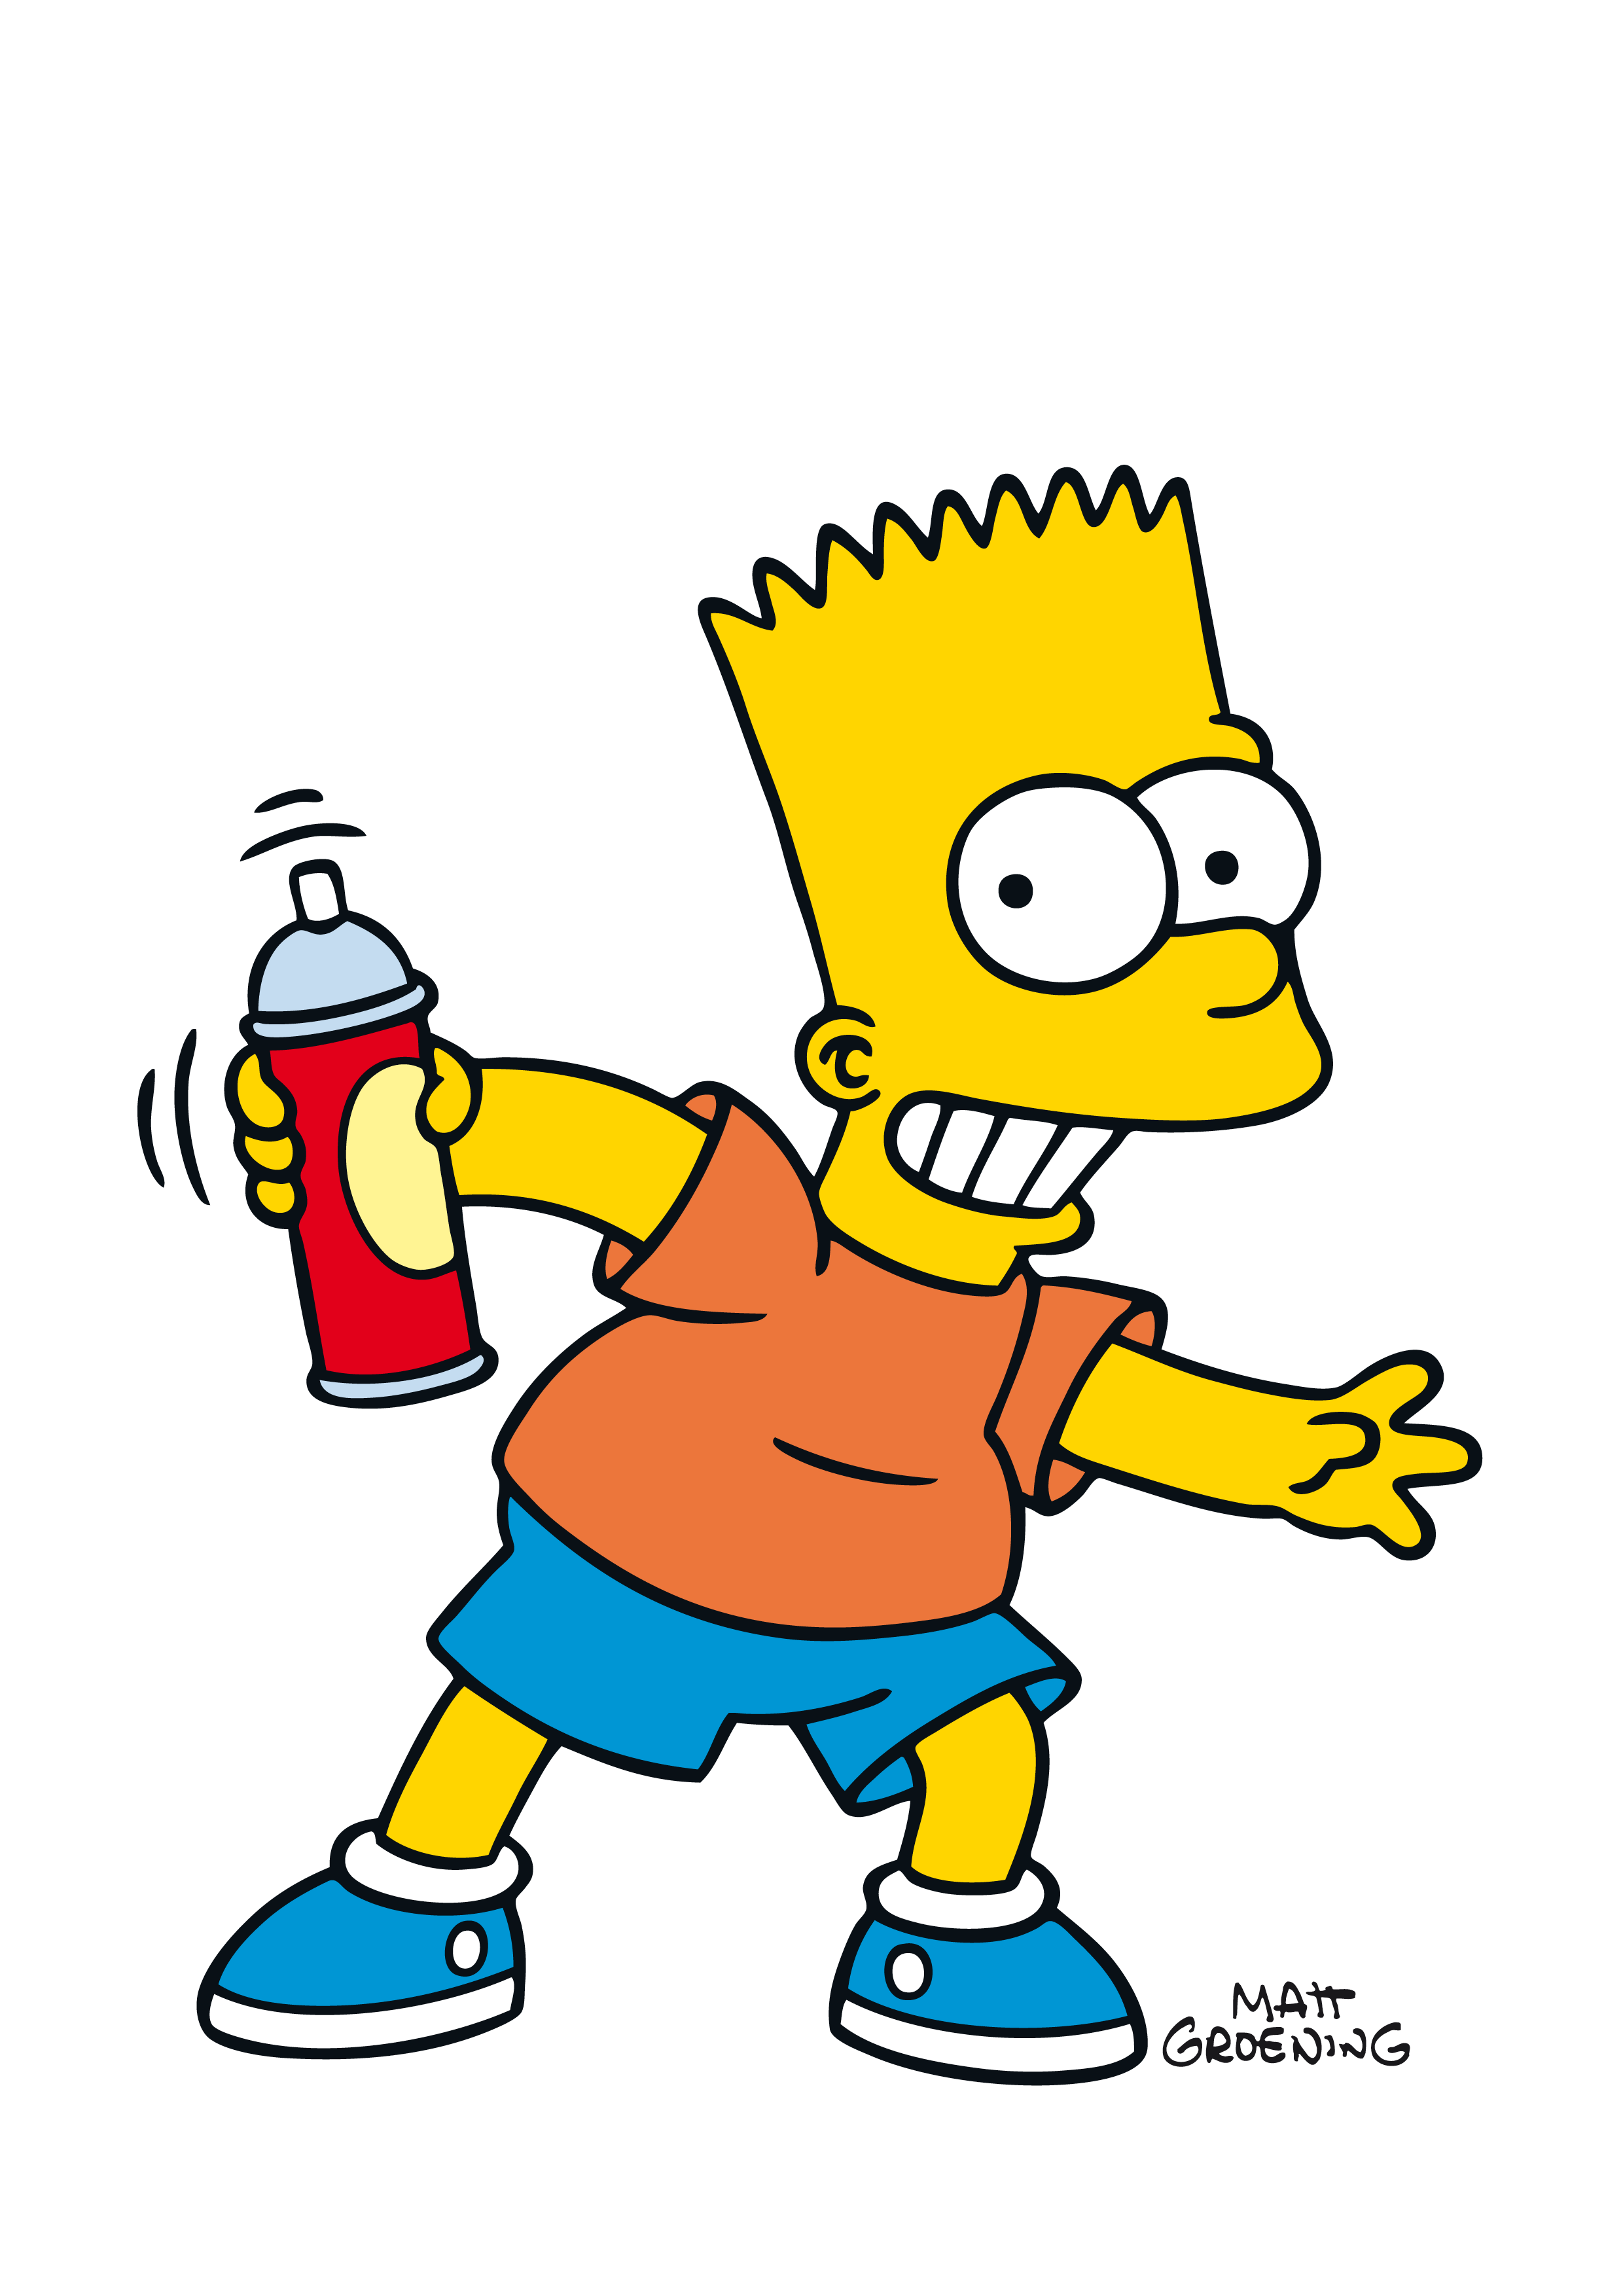 Bart Simpson wallpaper possib